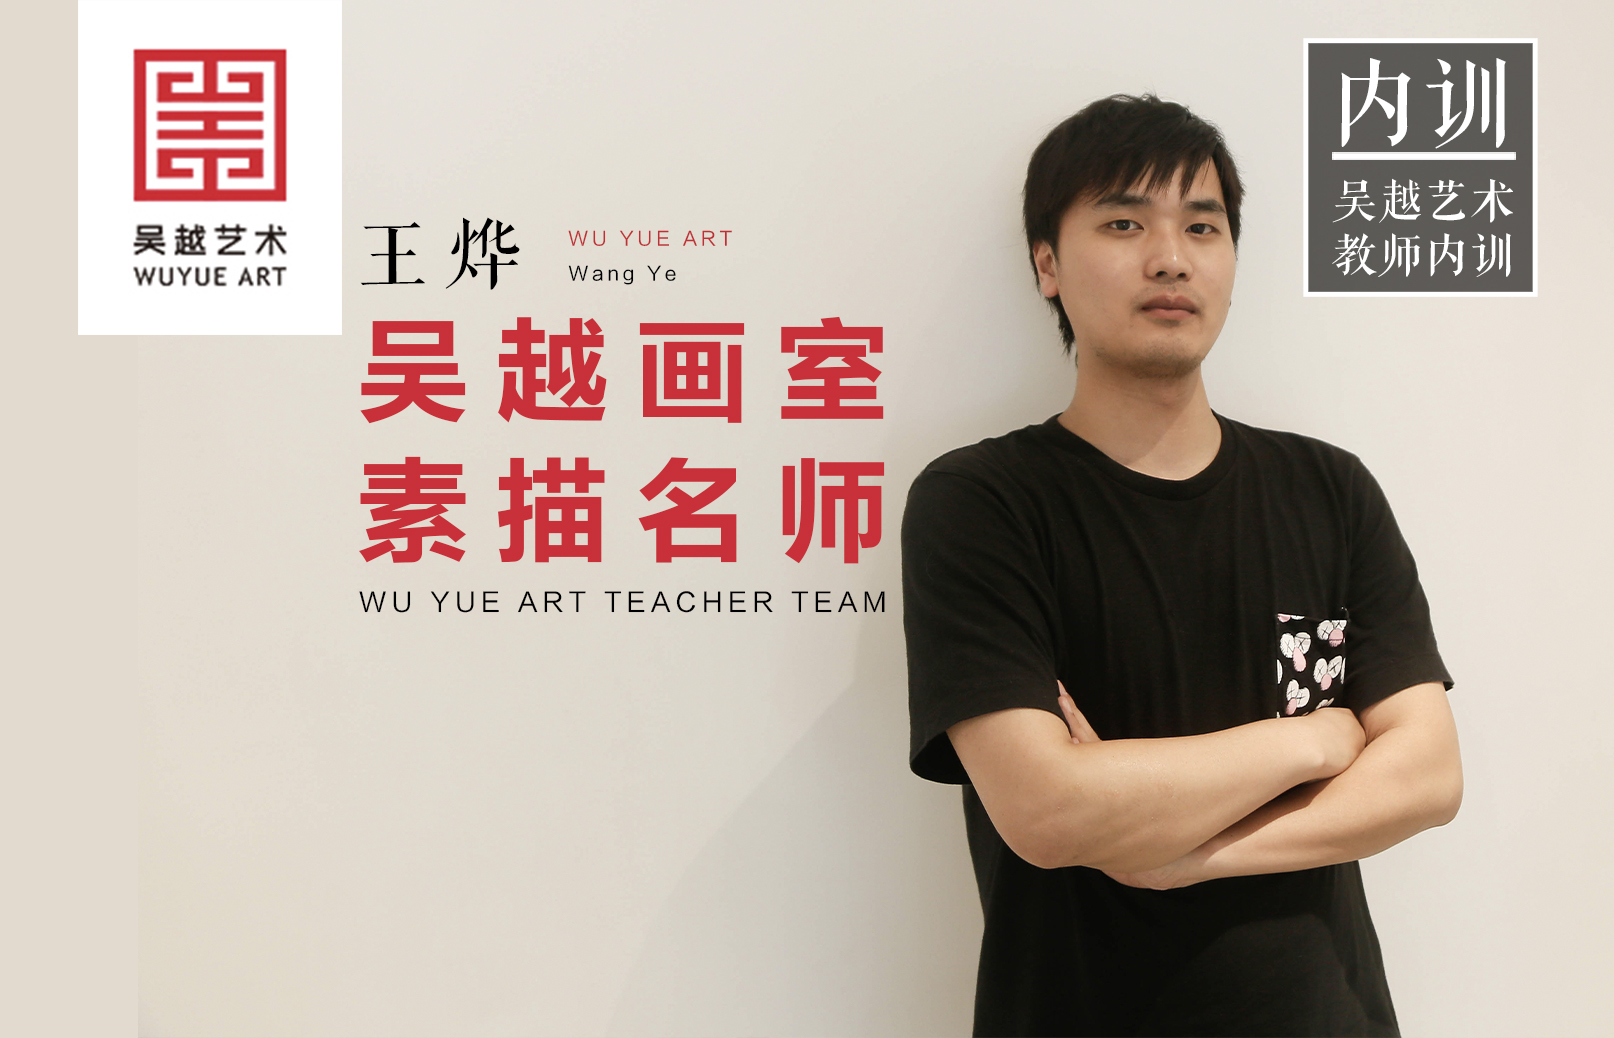 吴越名师｜王烨：他教学严谨，思路清晰并且像朋友一样去和学生互动是他的教